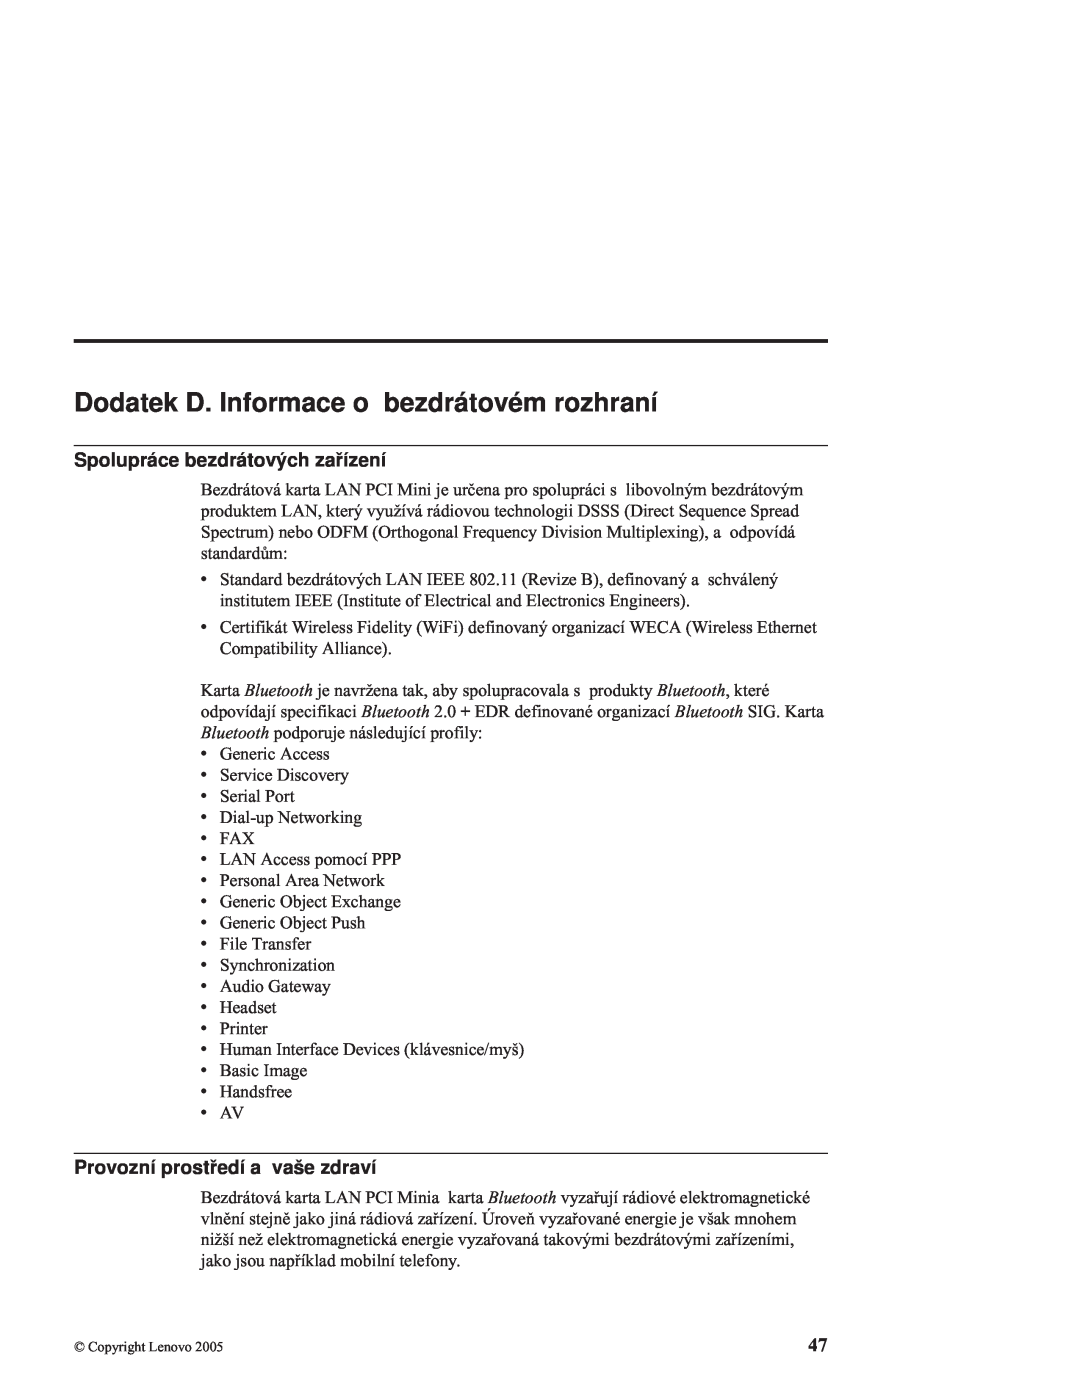 Lenovo C100 manual Dodatek D. Informace o bezdrátovém rozhraní, Spolupráce bezdrátových zařízení 